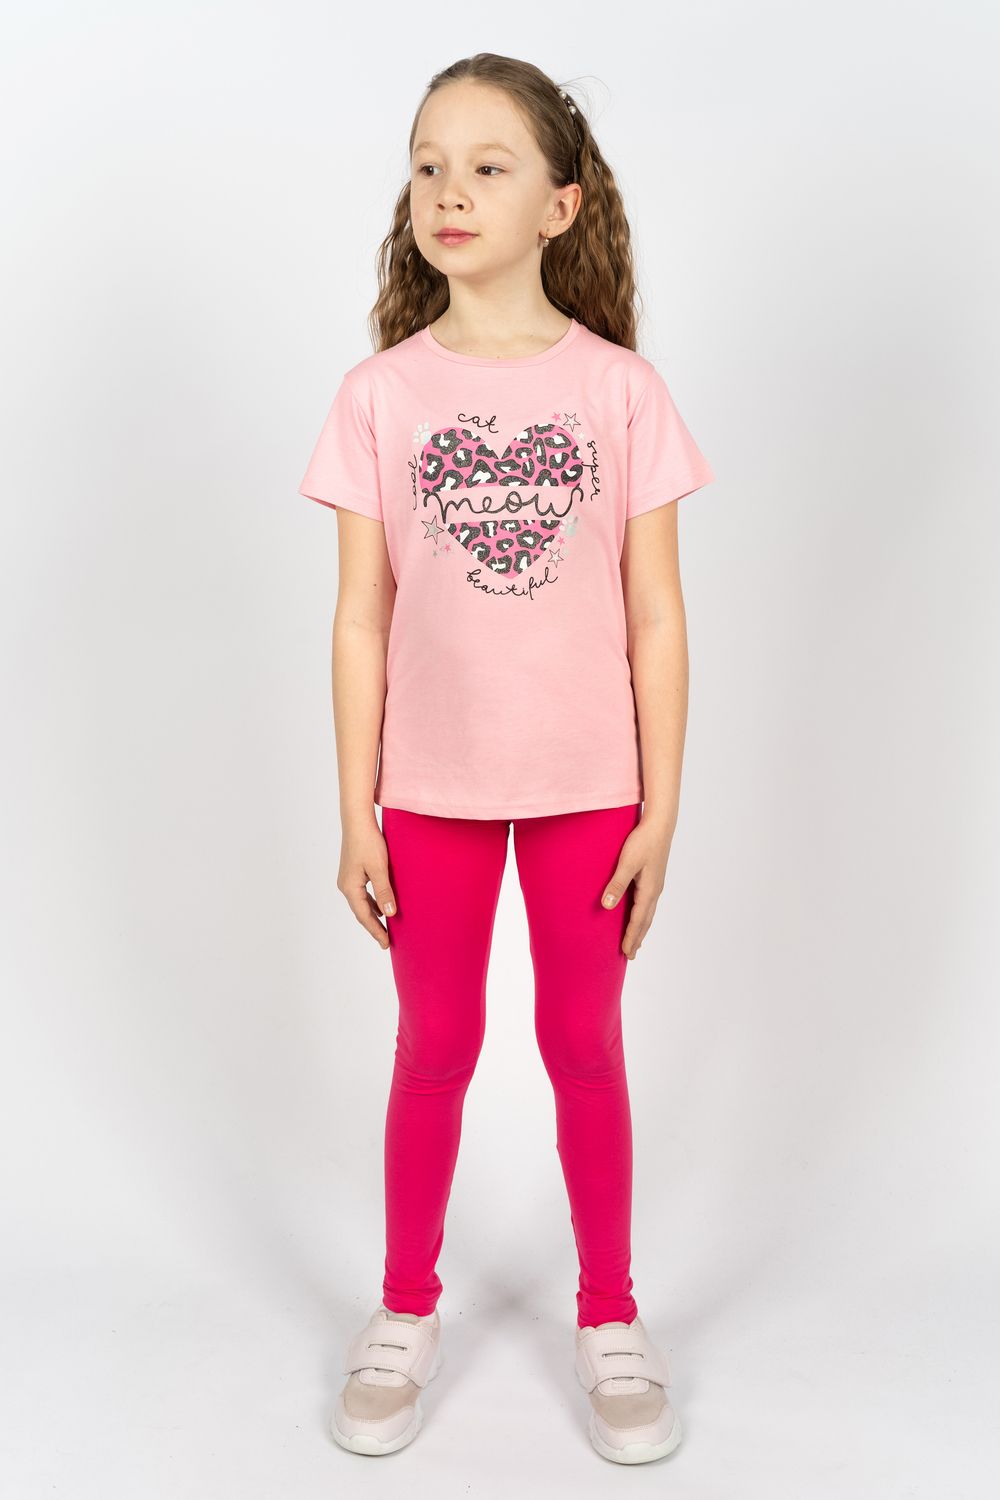 Комплект для девочки 41109 (футболка + лосины) - с.розовый/розовый